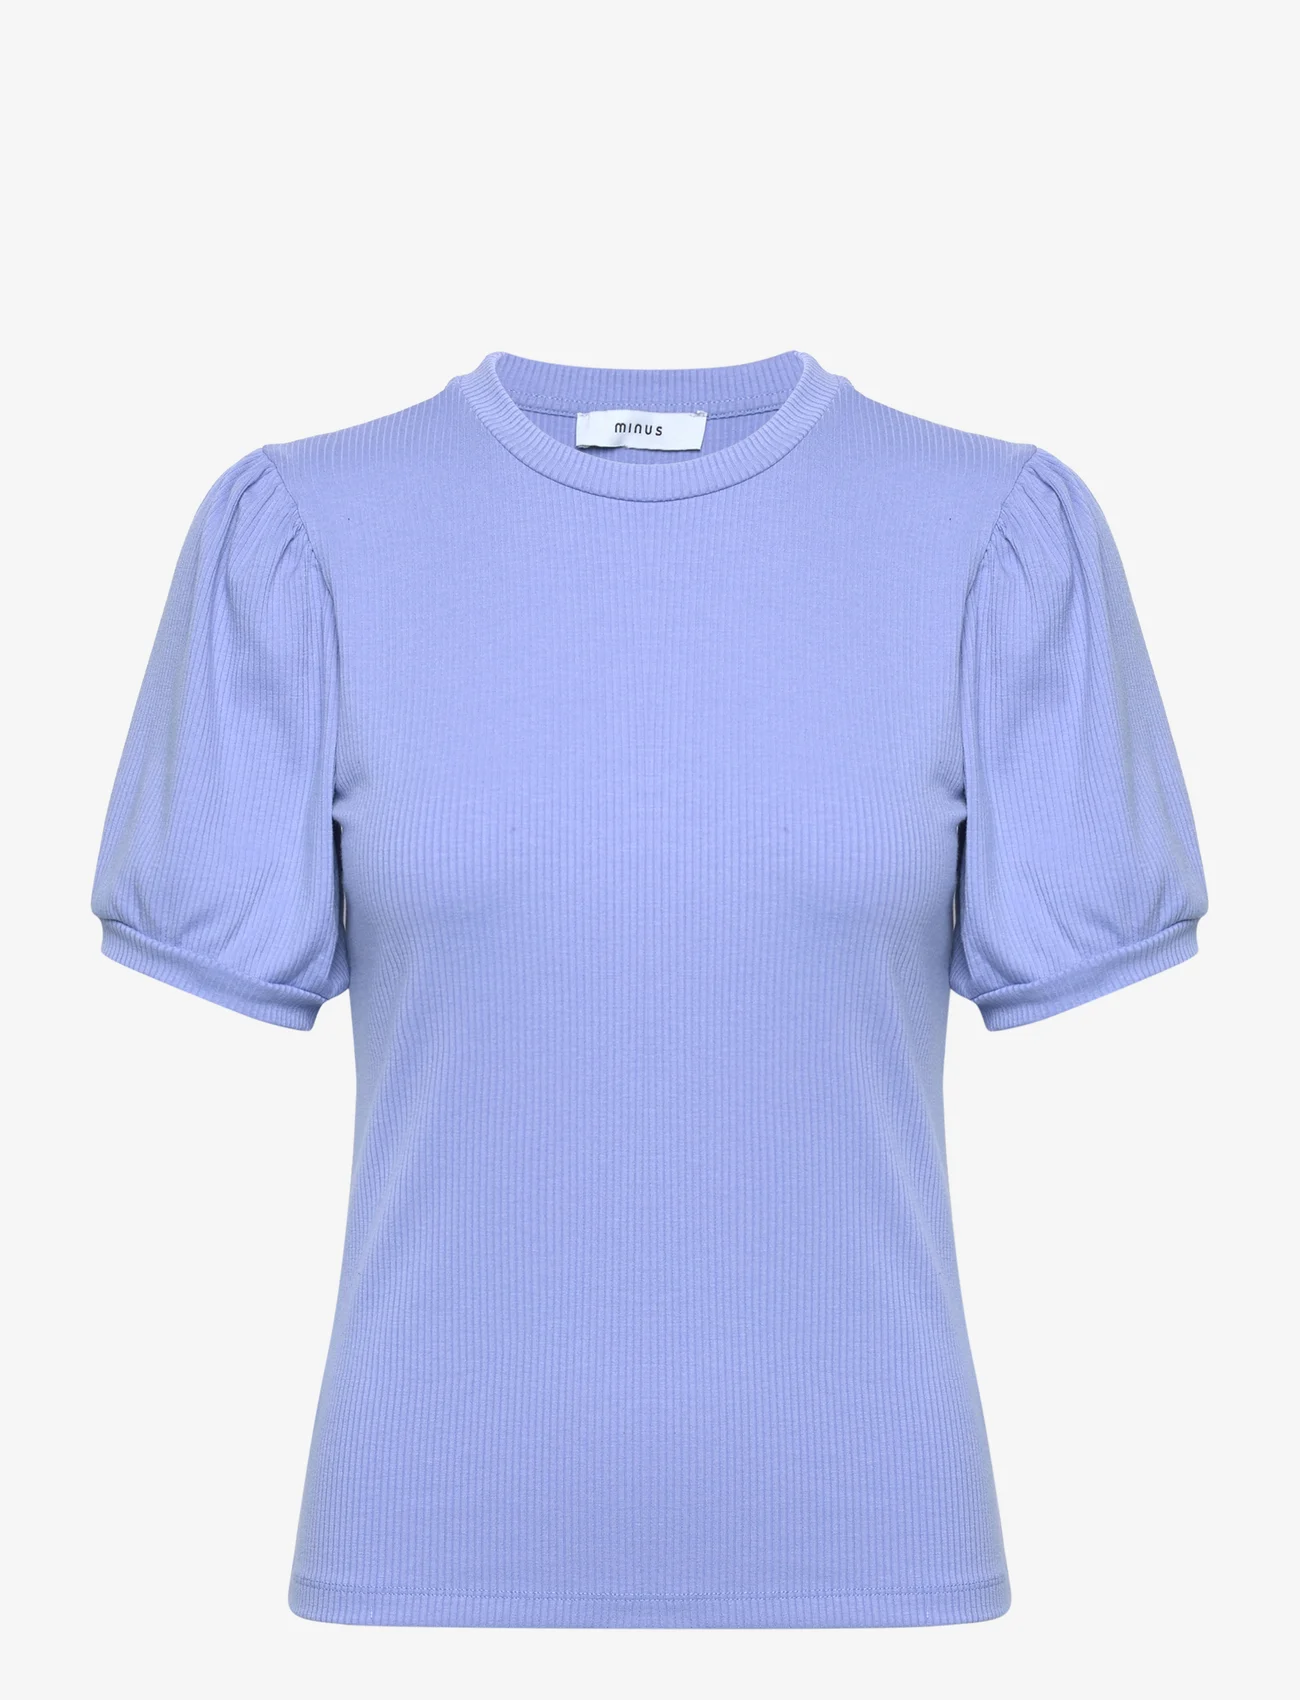 Minus - Johanna T-shirt - de laveste prisene - blue bonnet - 0